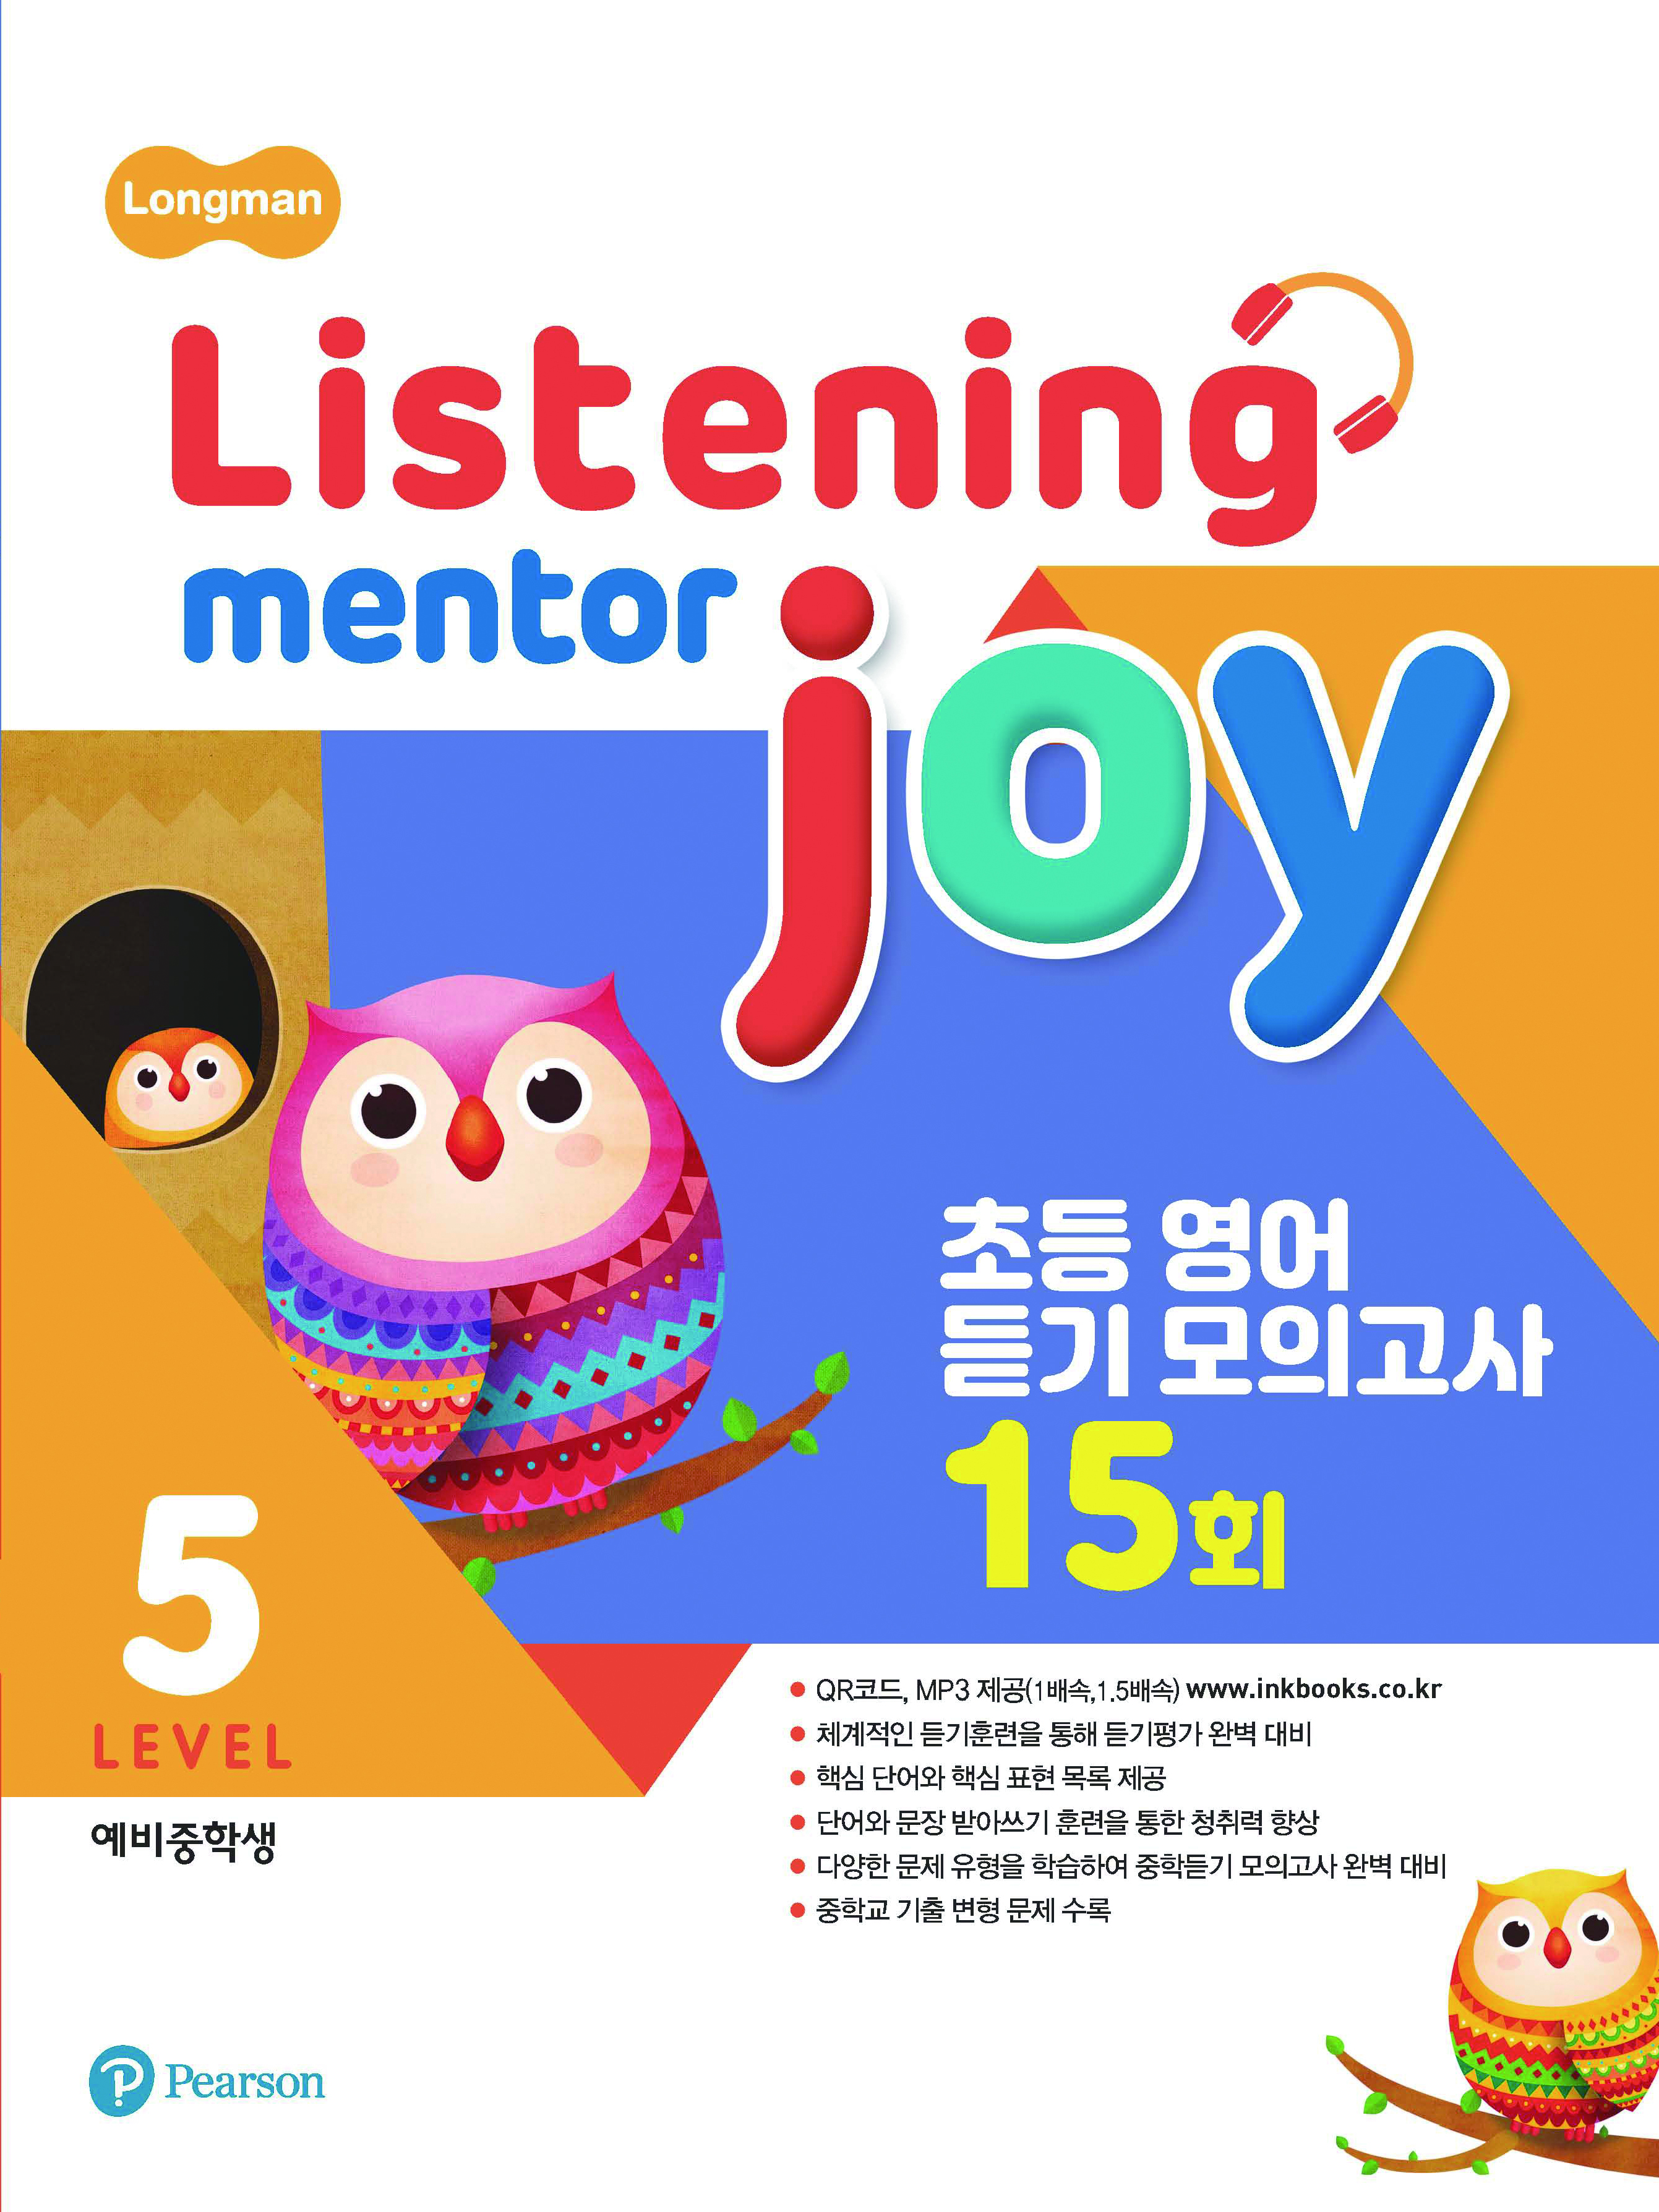 Listening Mentor Joy 5